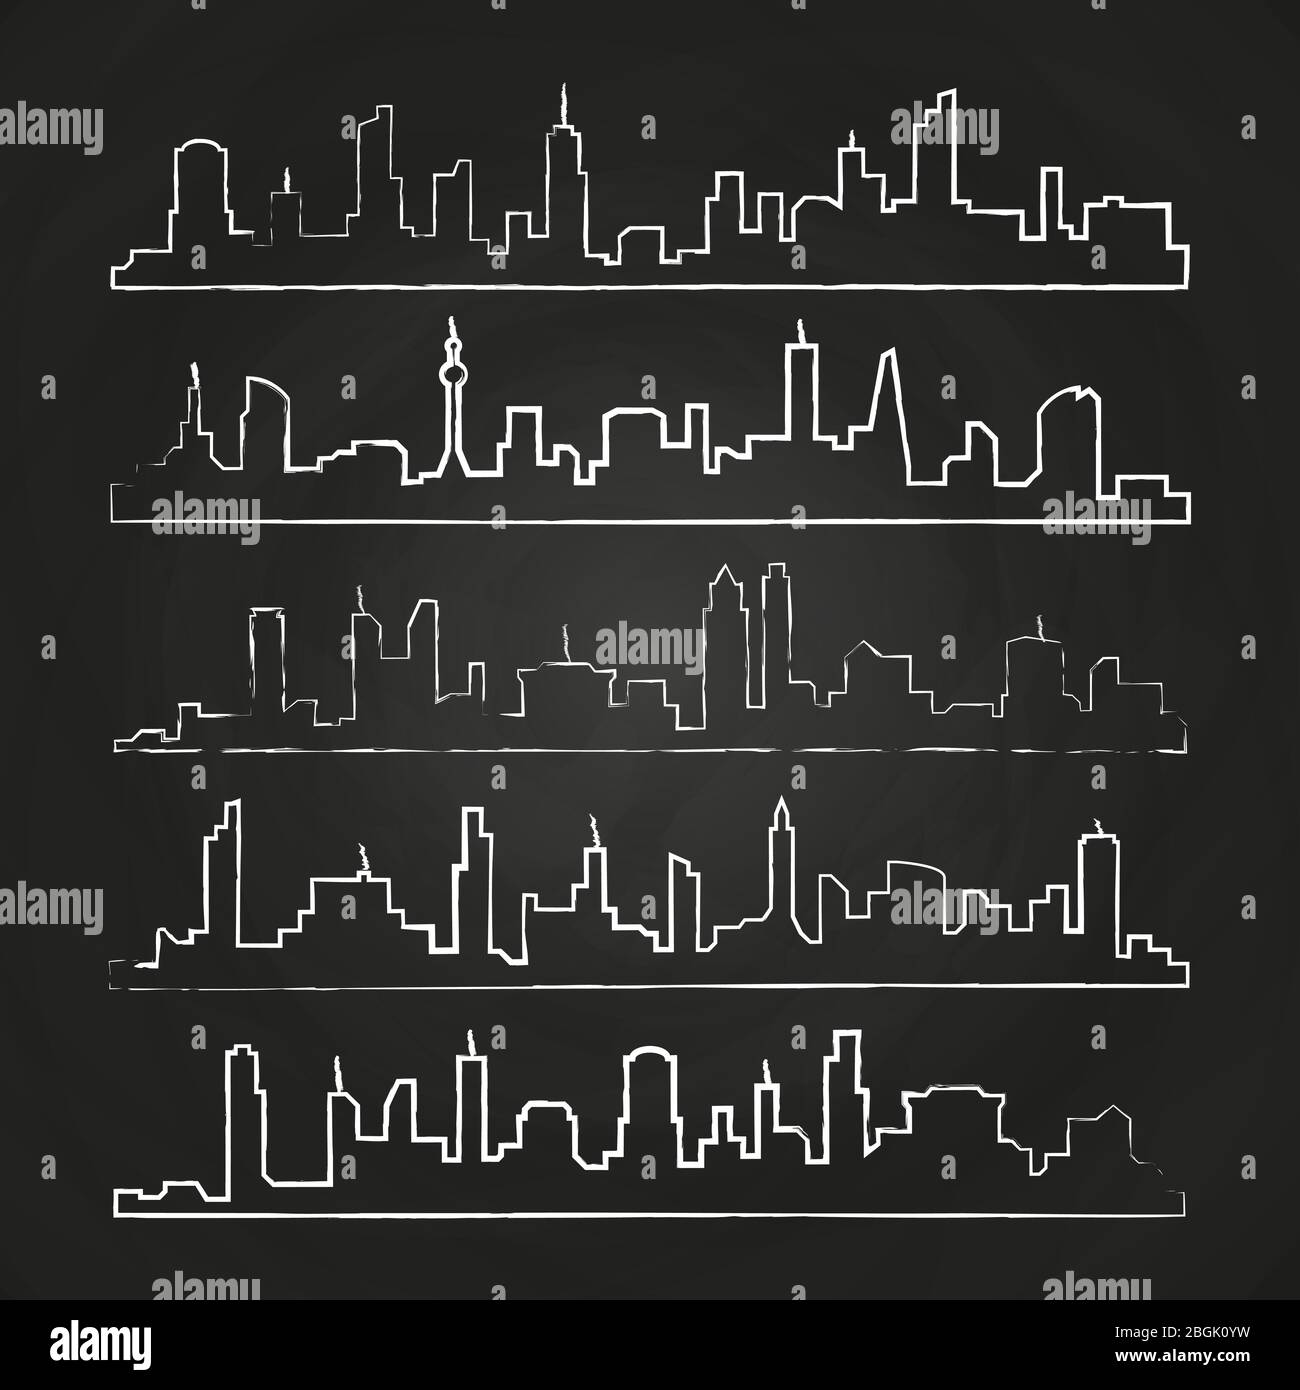 Grunge-Gebäude Linie der Stadt. Handgezeichnete städtische Vektor-Stadtlandschaft auf Tafel-Illustration gesetzt Stock Vektor